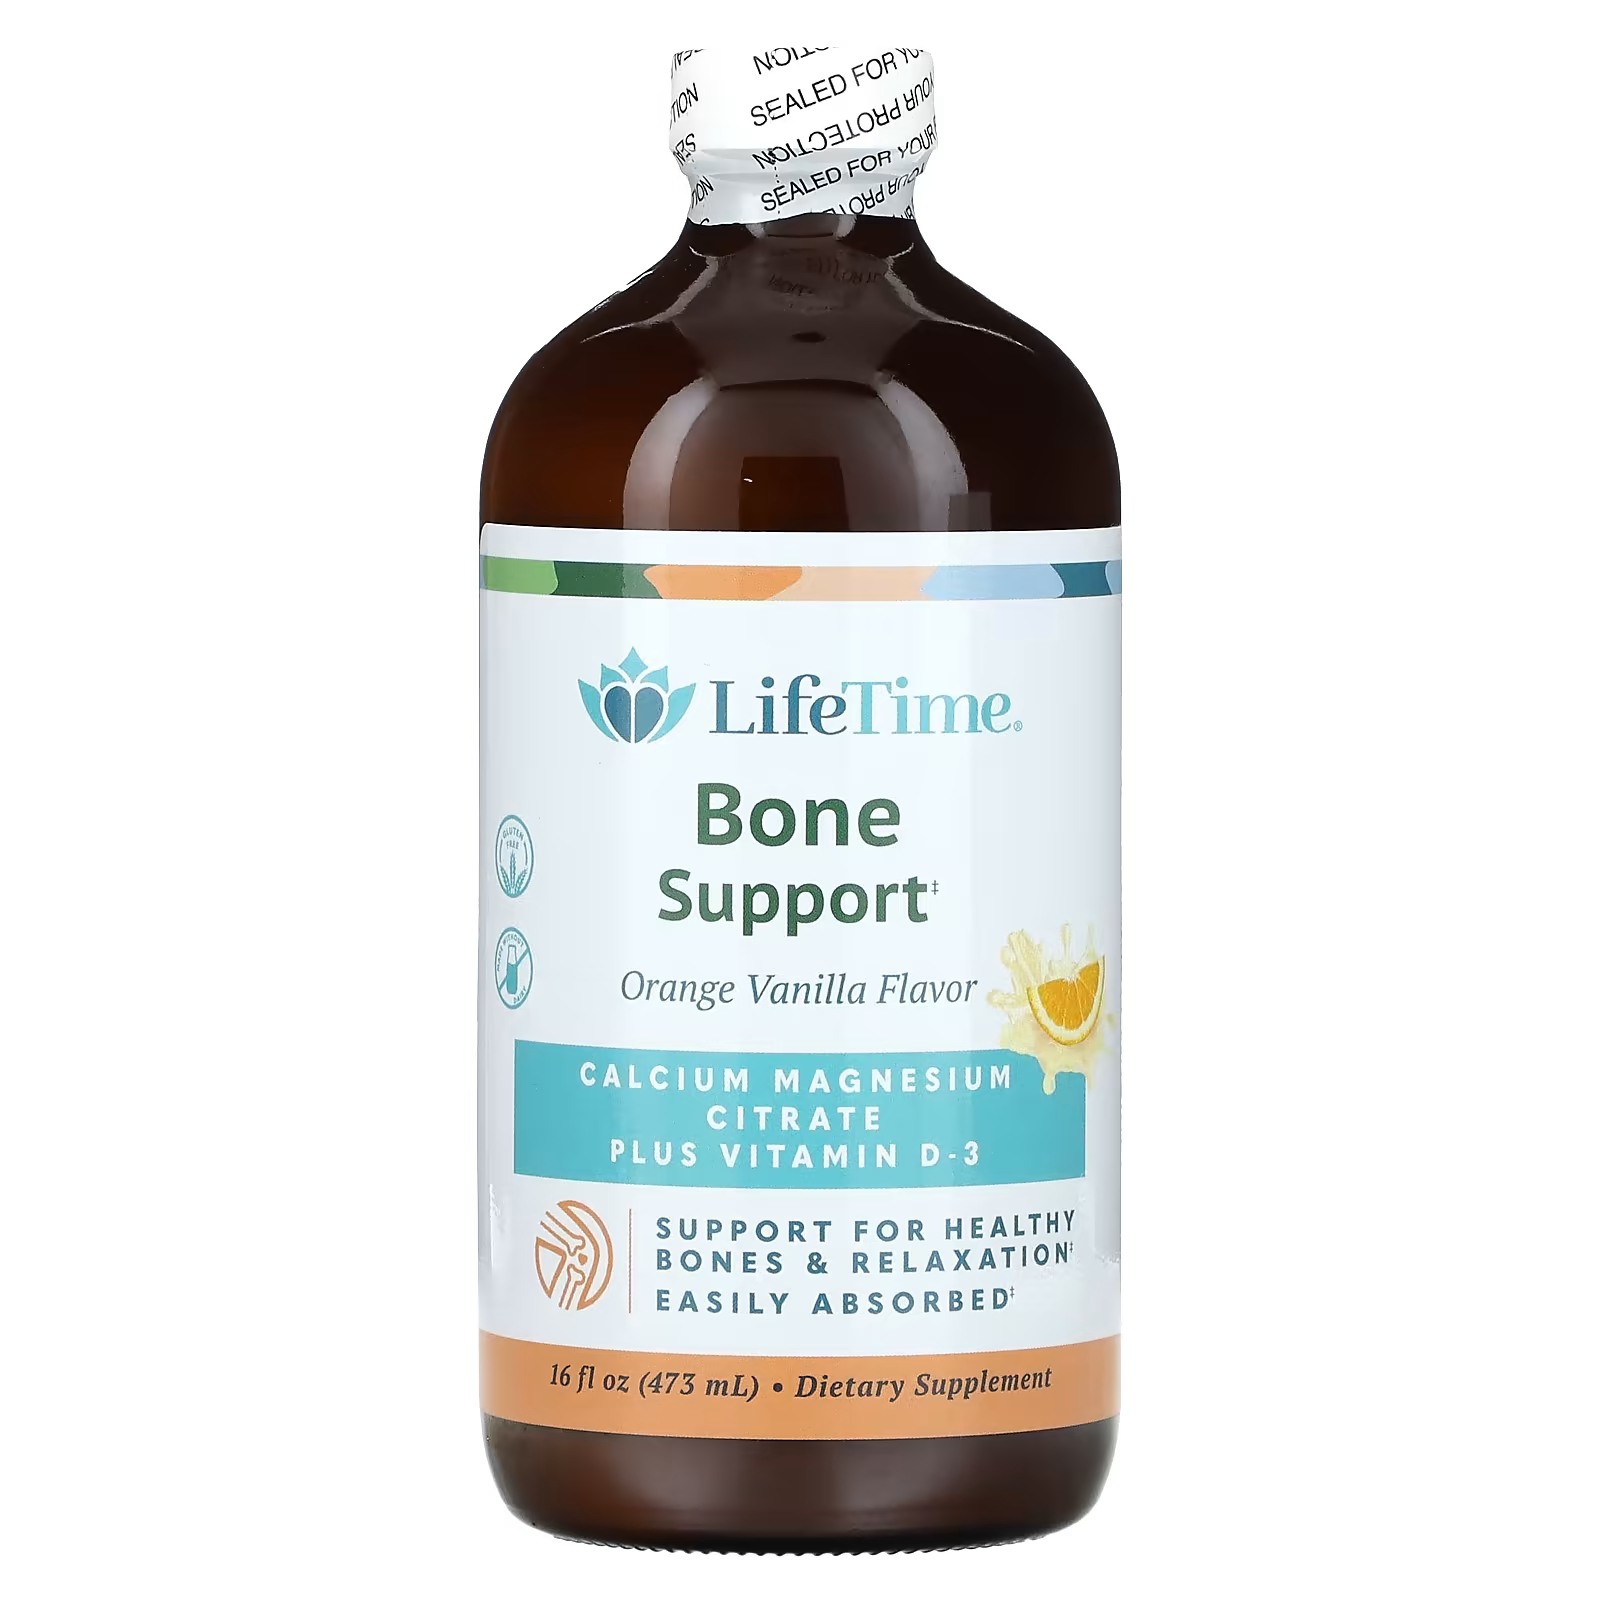 LifeTime витамины для поддержки костей, цитрат кальция, магния плюс витамин D-3, апельсин, ваниль, 16 жидких унций (473 мл) LifeTime Vitamins